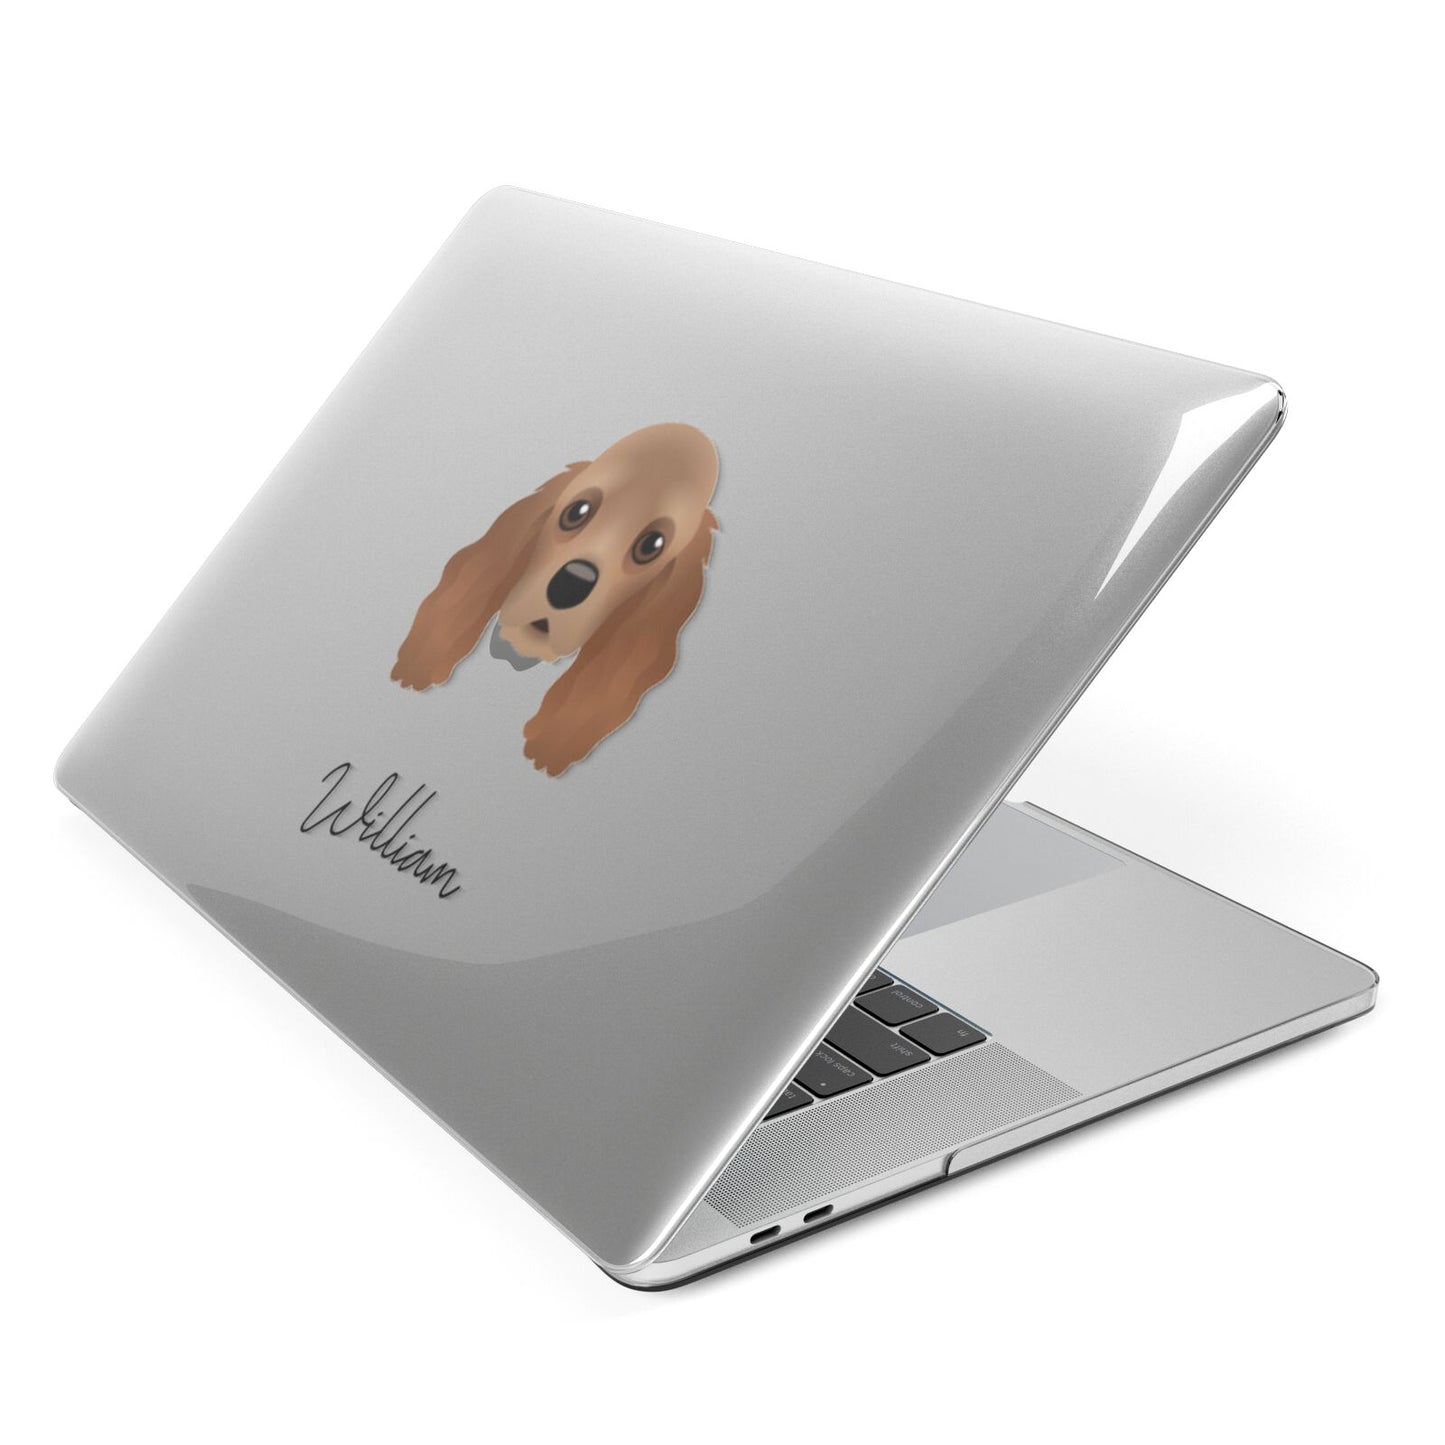 American Cocker Spaniel Personalised Apple MacBook Case Side View